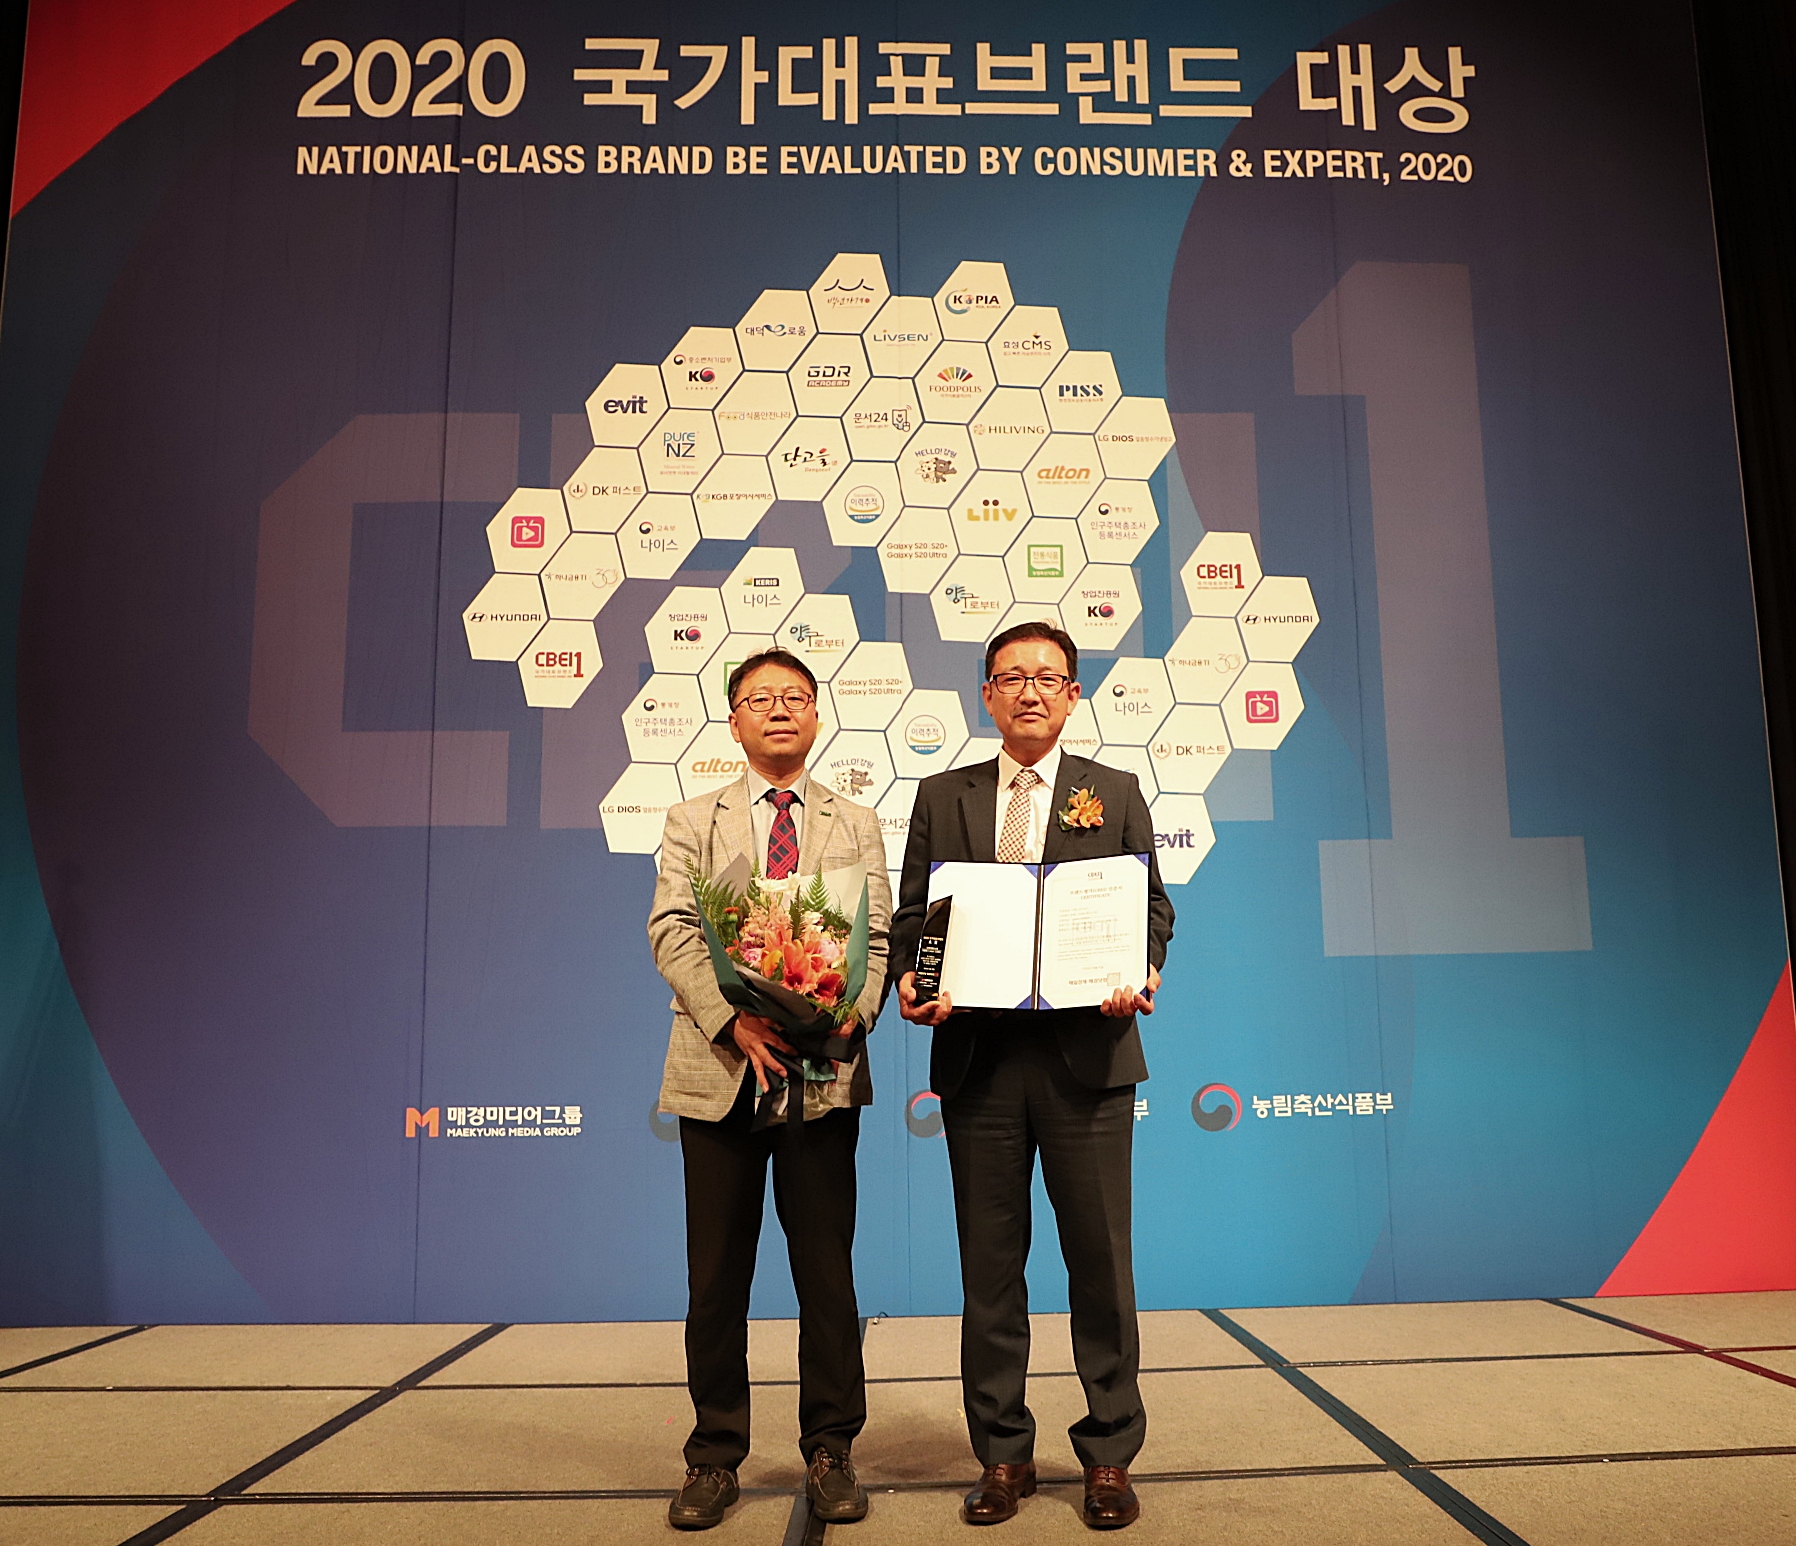 不織布 「LIVSEN」2020国家代表ブランド大賞を授賞、素材・技術革新を通じてグローバルリーダーへ成長